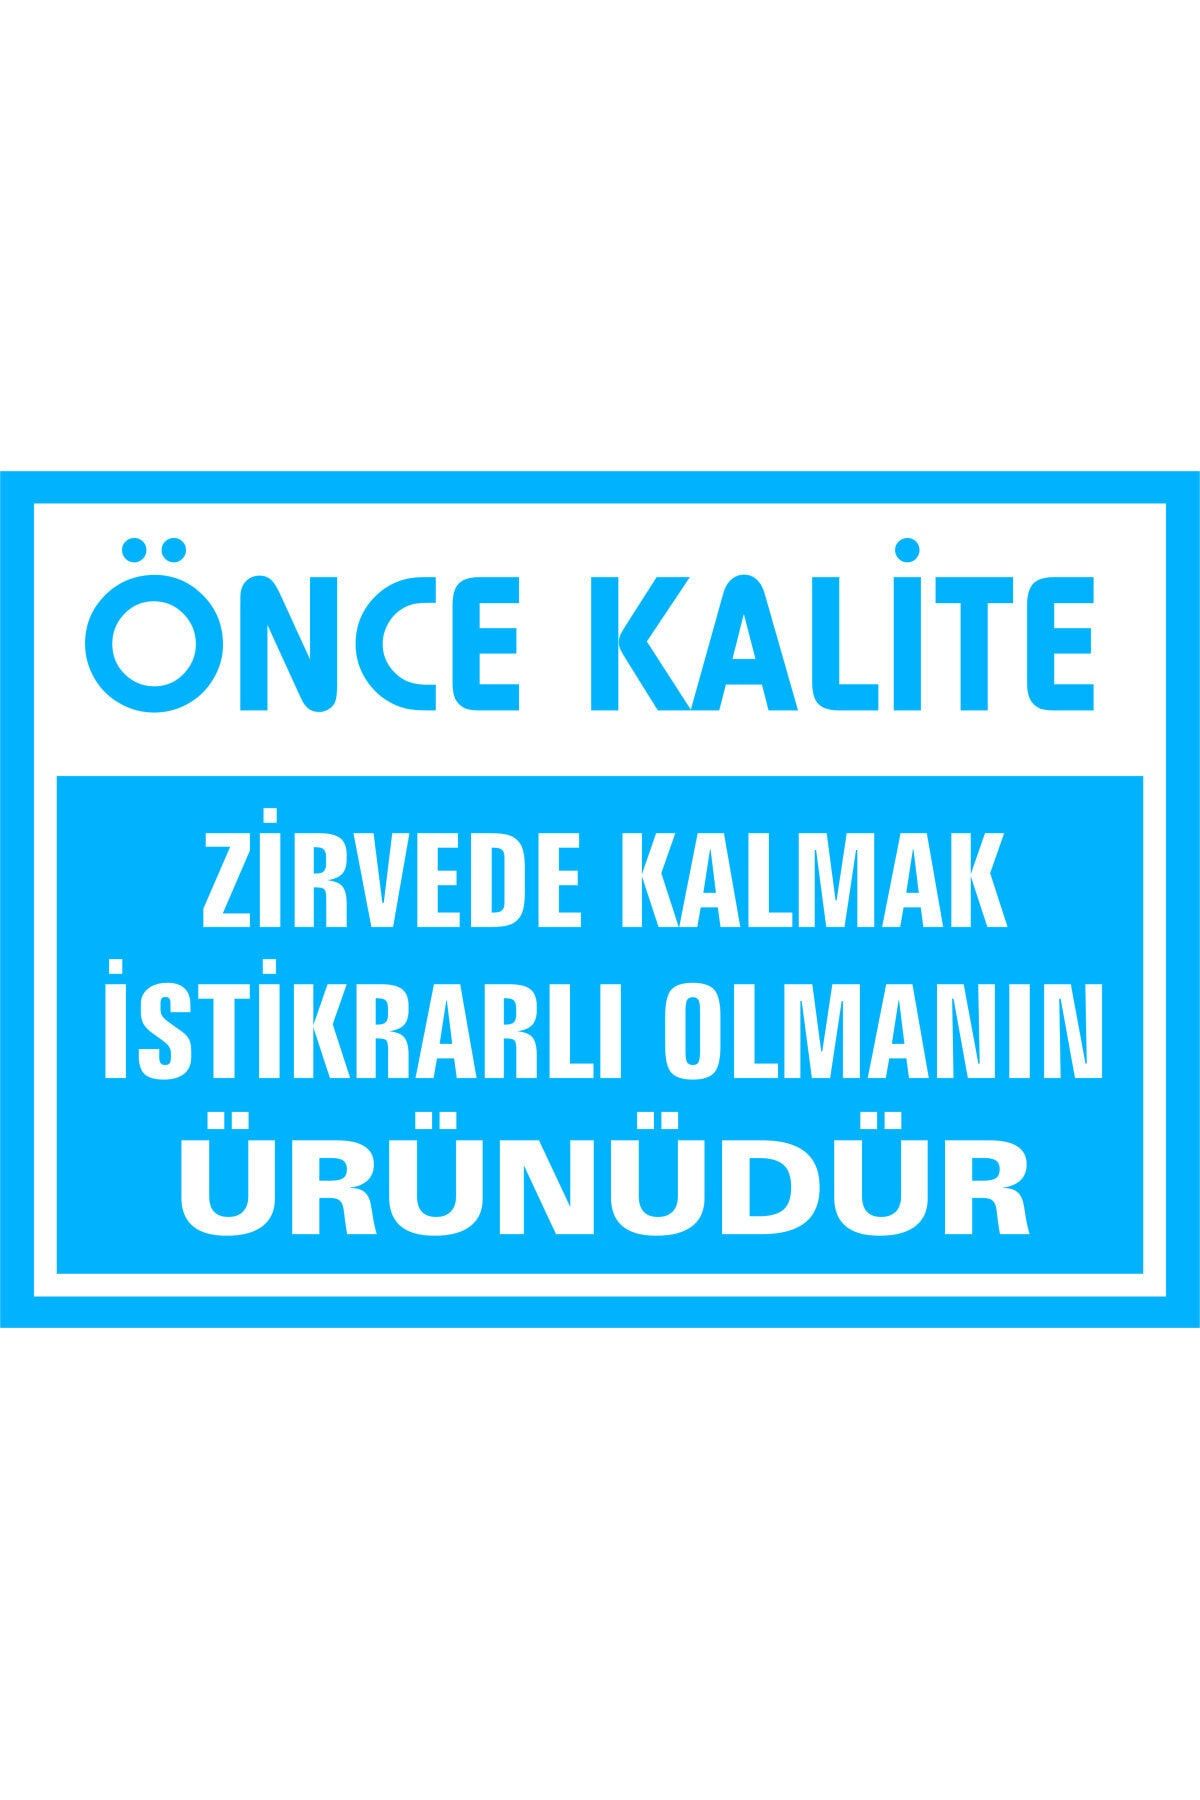 İzmir Serigrafi Önce Kalite Zirvede Kalmak Istikrarlı Olmanın Ürünüdür Kendinden Yapışkanlı Etiket 25 X 35 Cm